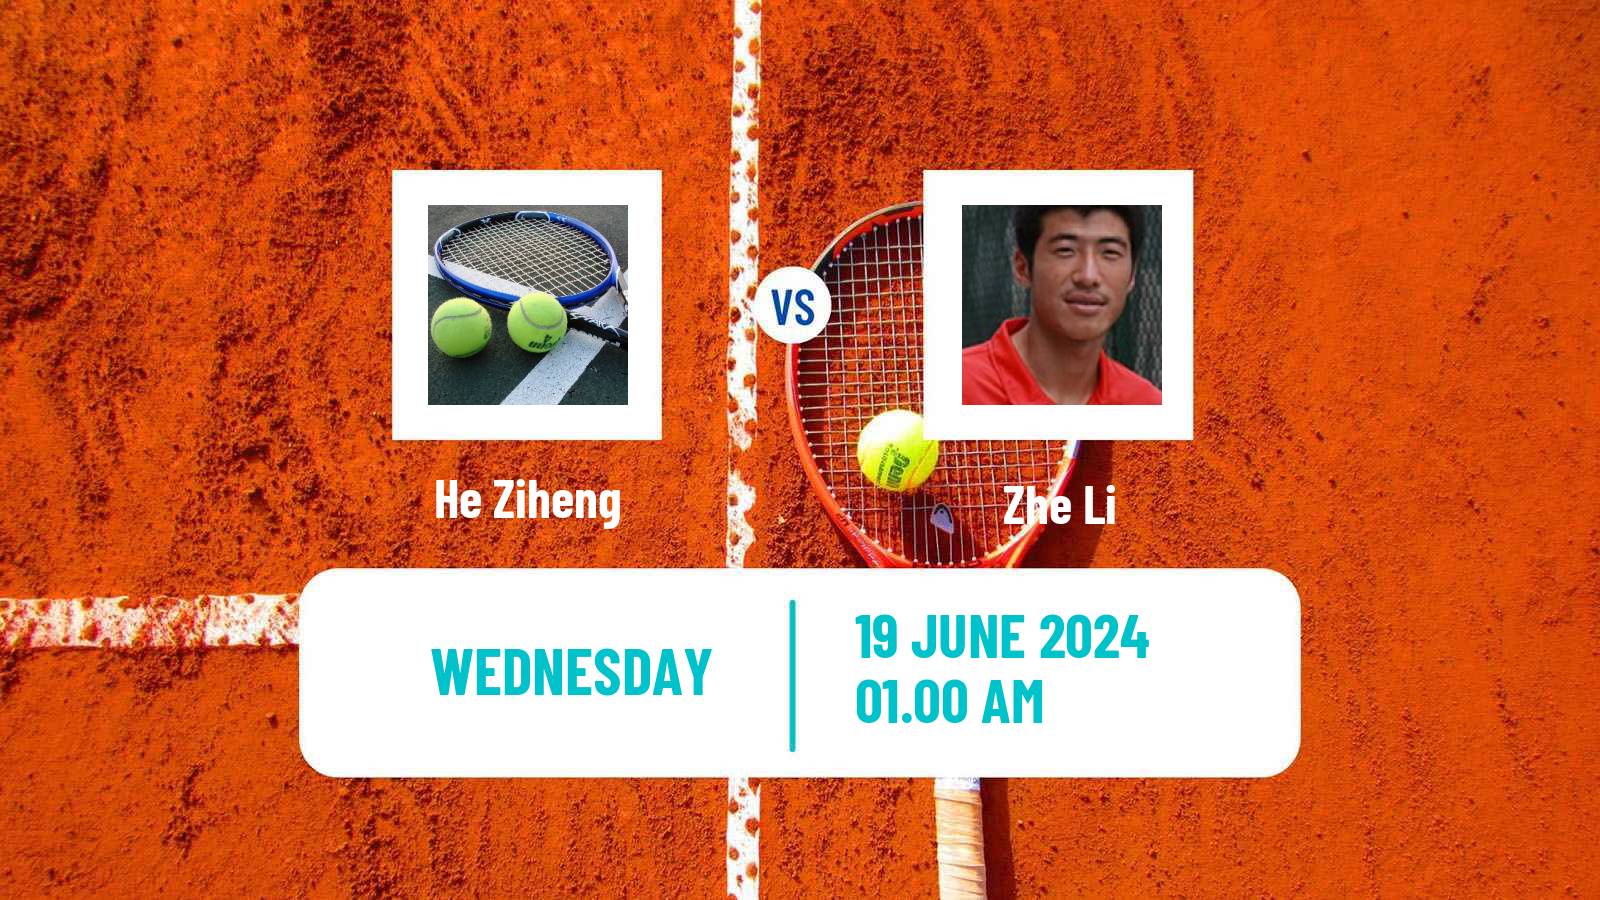 Tennis ITF M25 Luzhou Men He Ziheng - Zhe Li